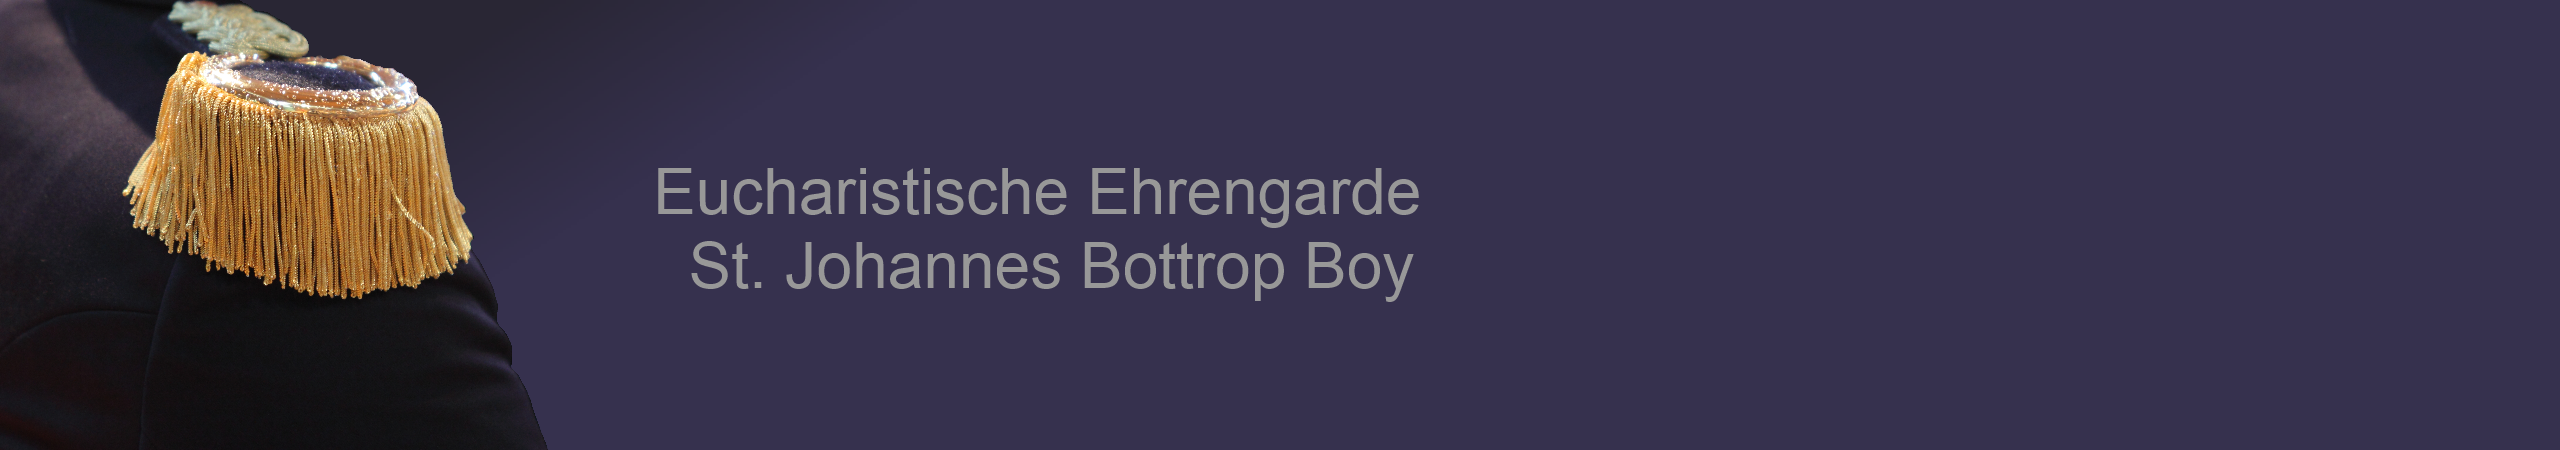 Eucharistische Ehrengarde St. Johannes Bottrop Boy